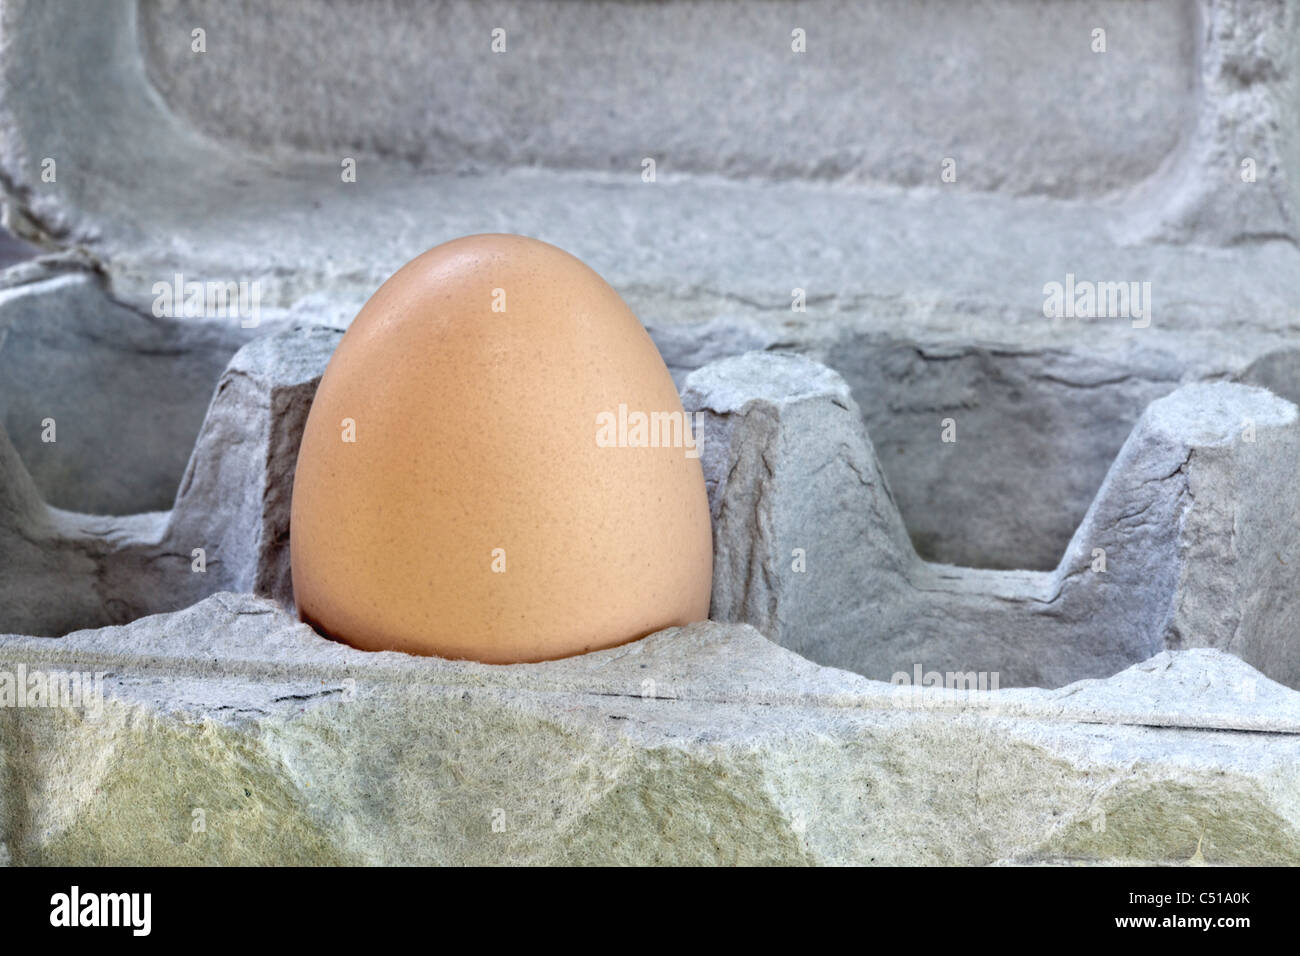 Brown 'Chicken' egg in carton Stock Photo